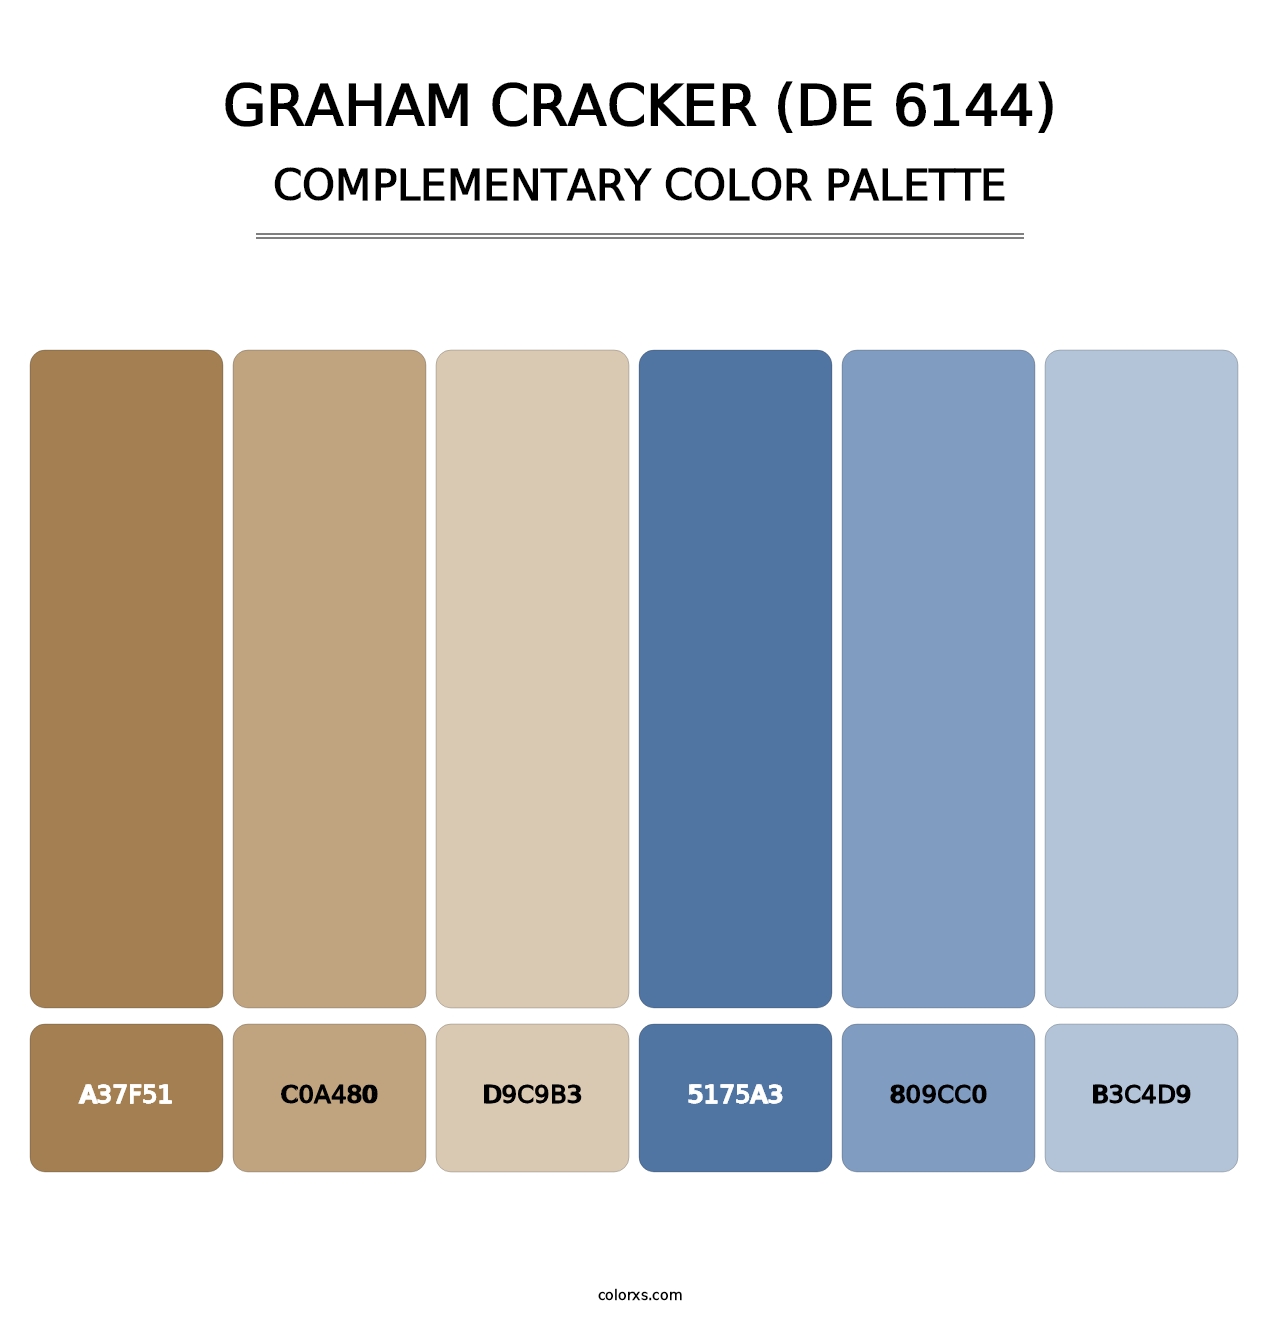 Graham Cracker (DE 6144) - Complementary Color Palette